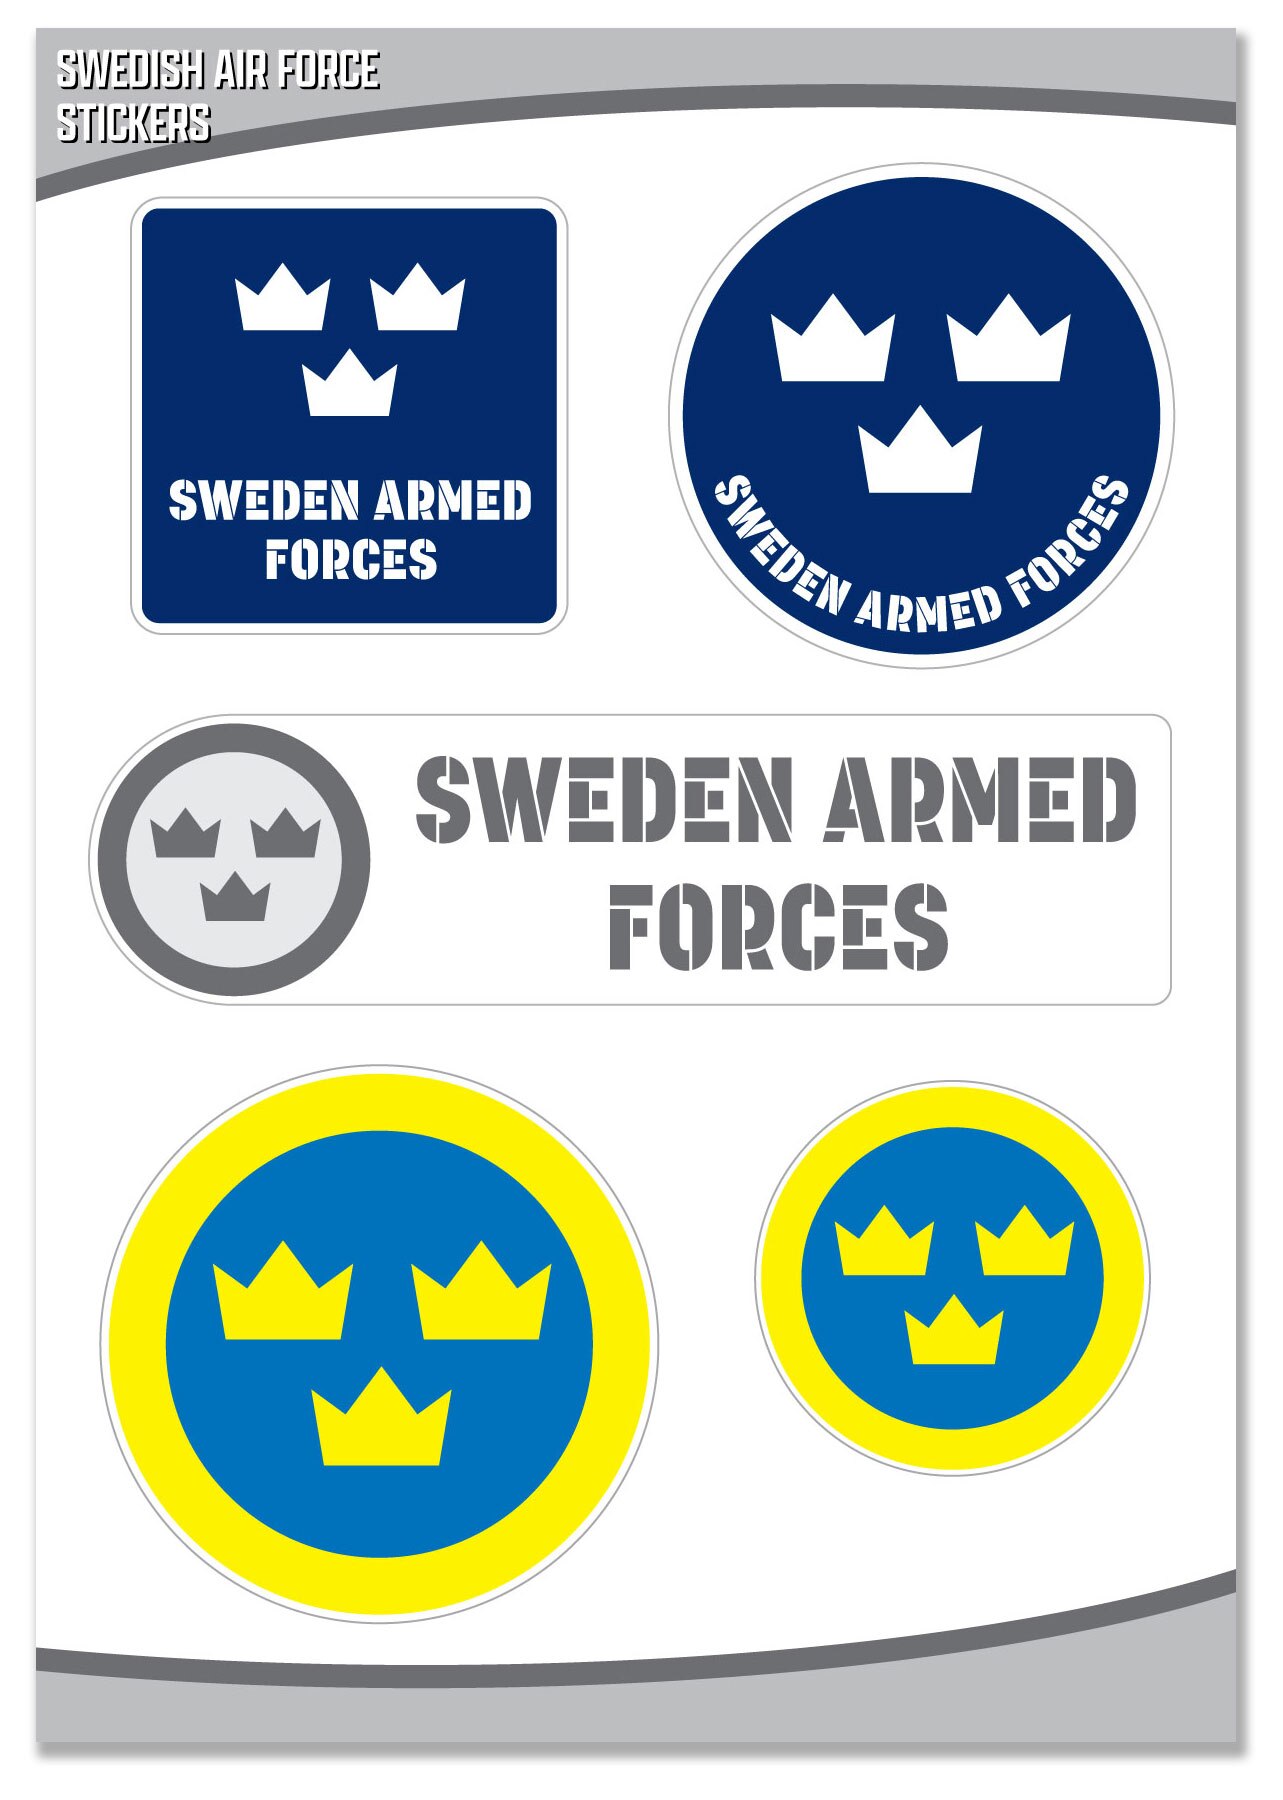 Swedish Airforce sticker.